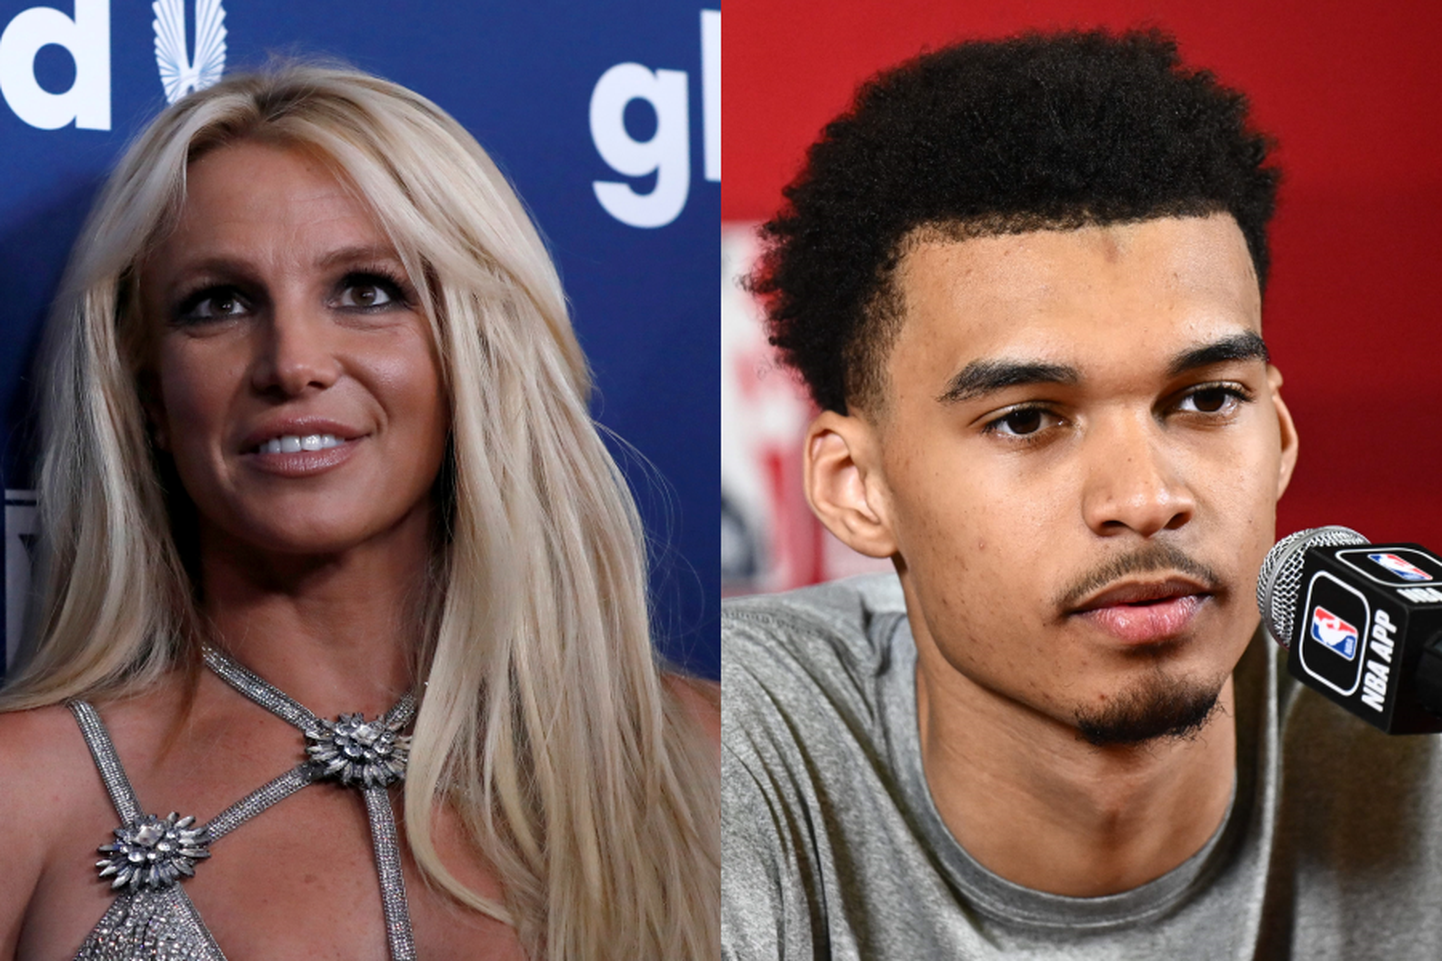 Britney Spears ja korvpallur Victor Wembanyama on sattunud skandaali, mille keskmes on kõmuline kõrvakiil